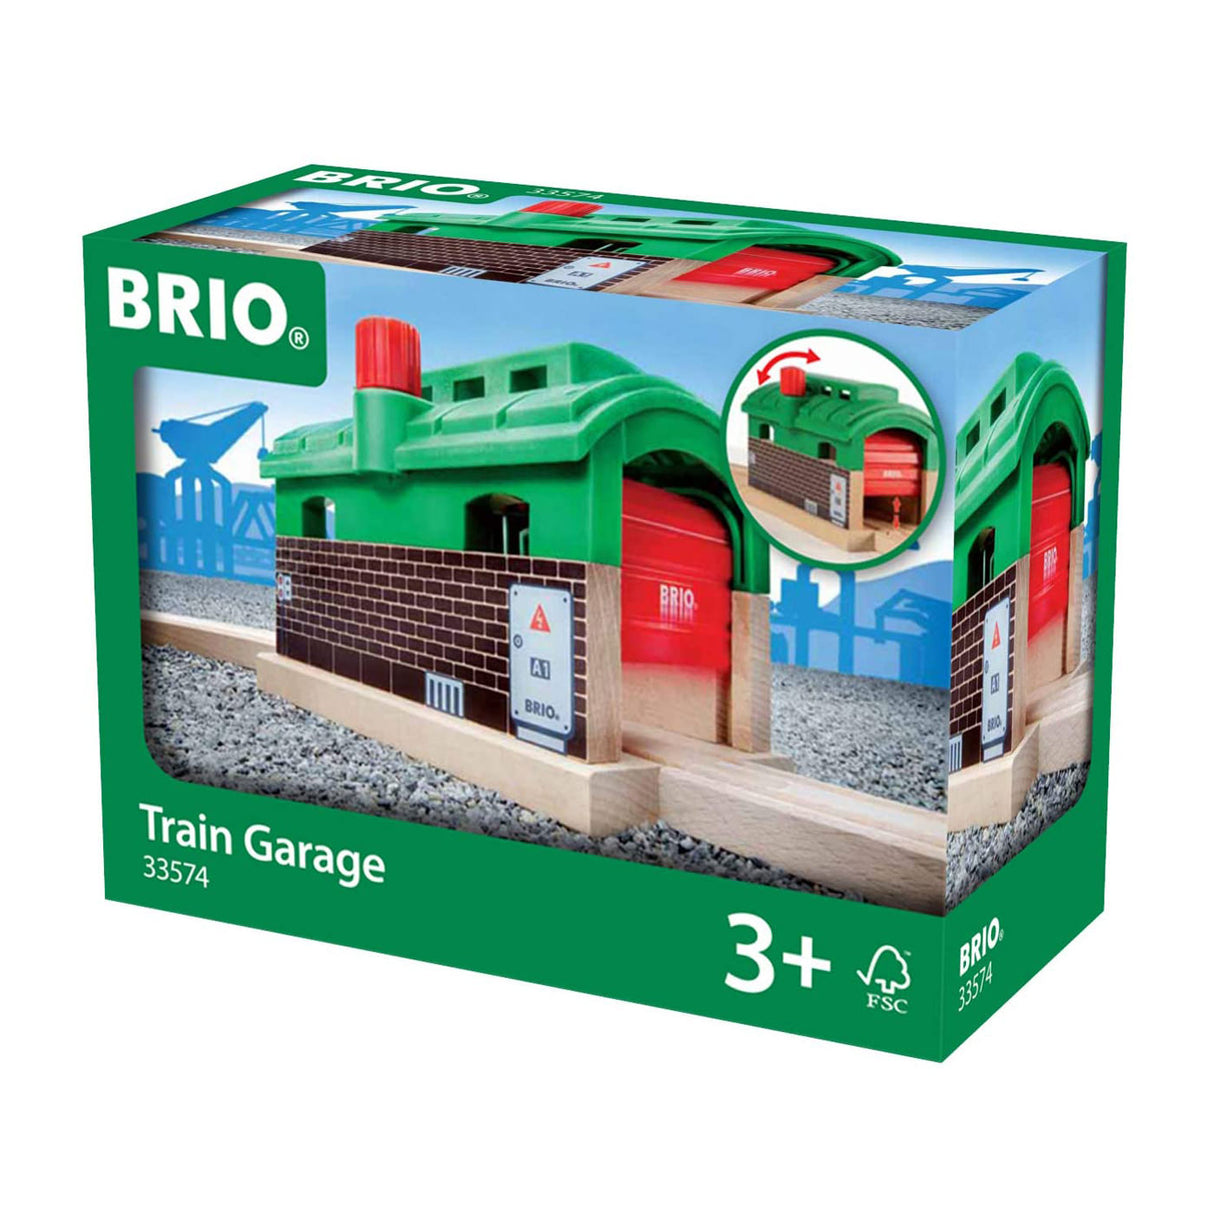 BRIO 33574 Railway Train Garage